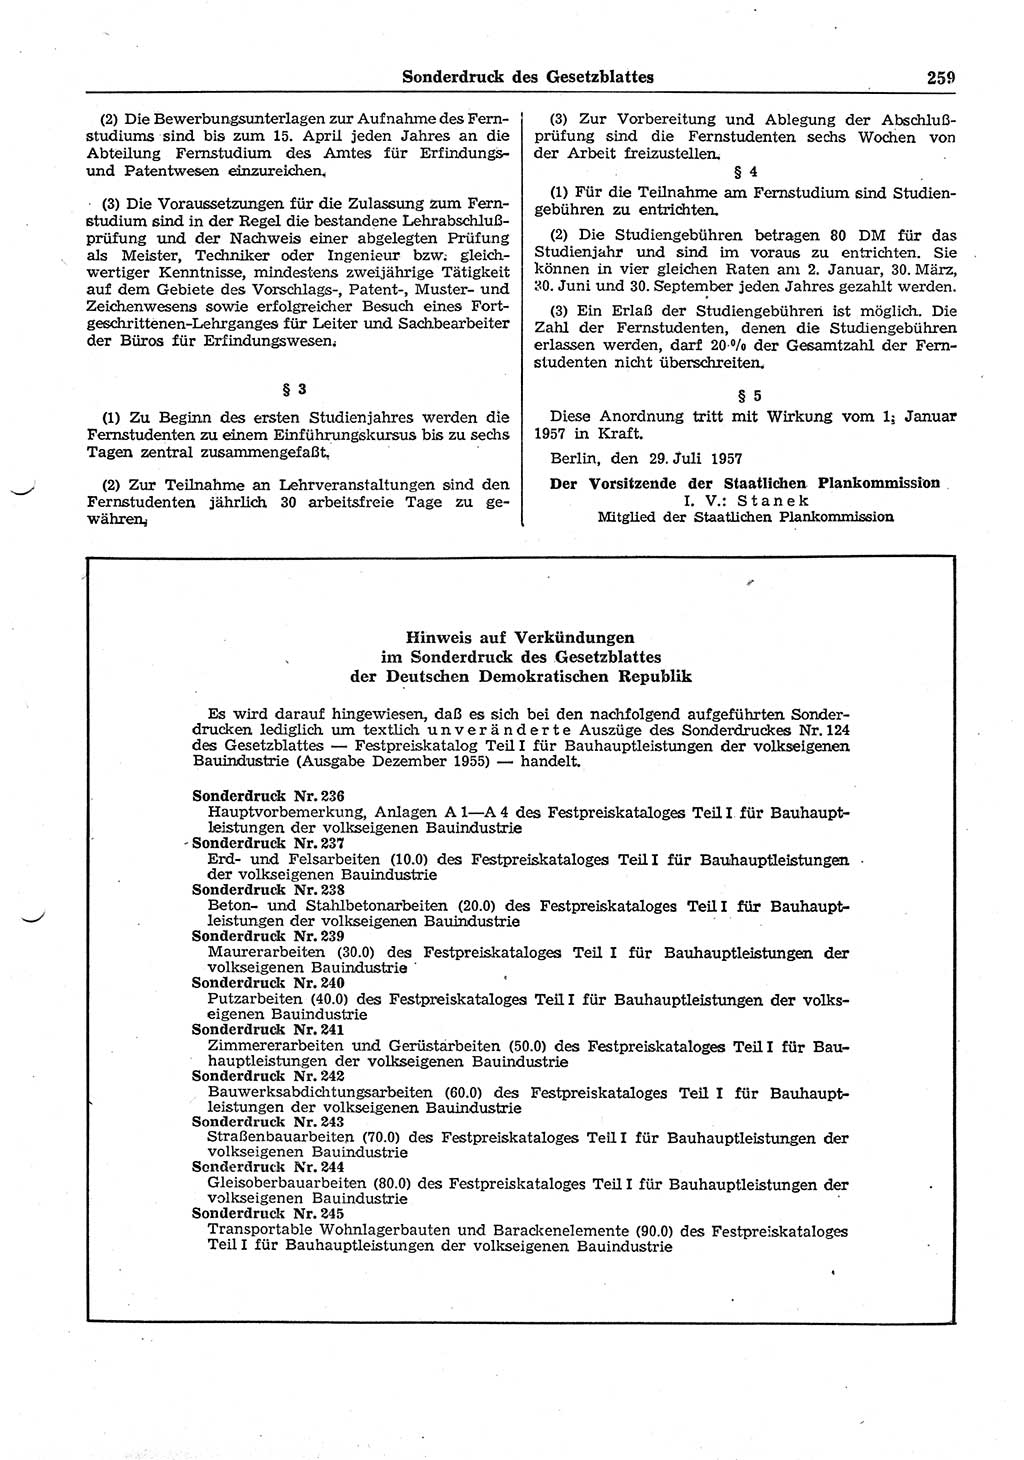 Gesetzblatt (GBl.) der Deutschen Demokratischen Republik (DDR) Teil ⅠⅠ 1957, Seite 259 (GBl. DDR ⅠⅠ 1957, S. 259)